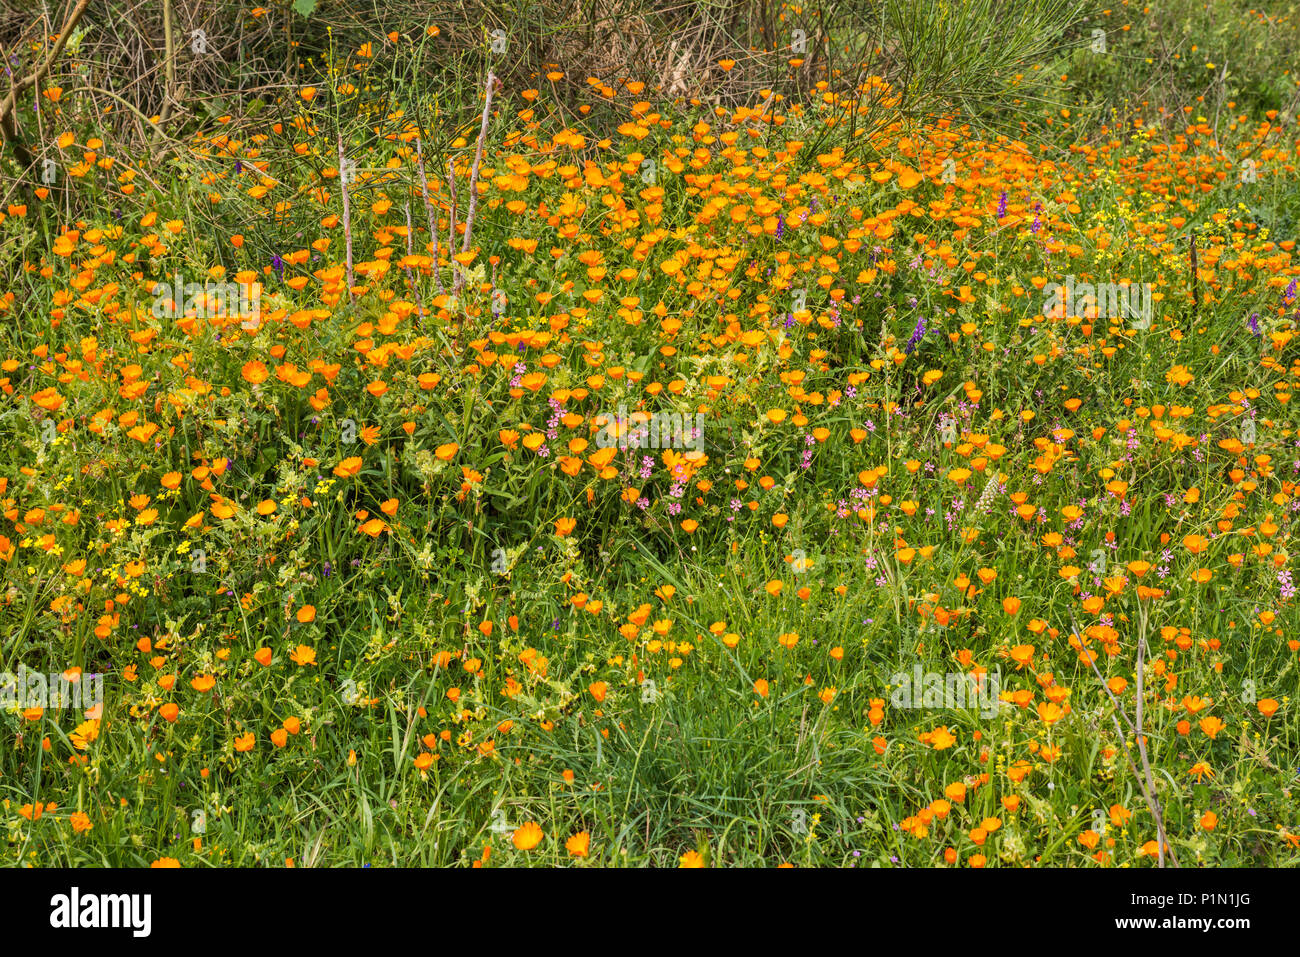 Domaine de tagètes (Calendulas), qui fleurit en avril à la route 183, le Parc National de l'Aspromonte, près de San Lorenzo, Calabre, Italie Banque D'Images